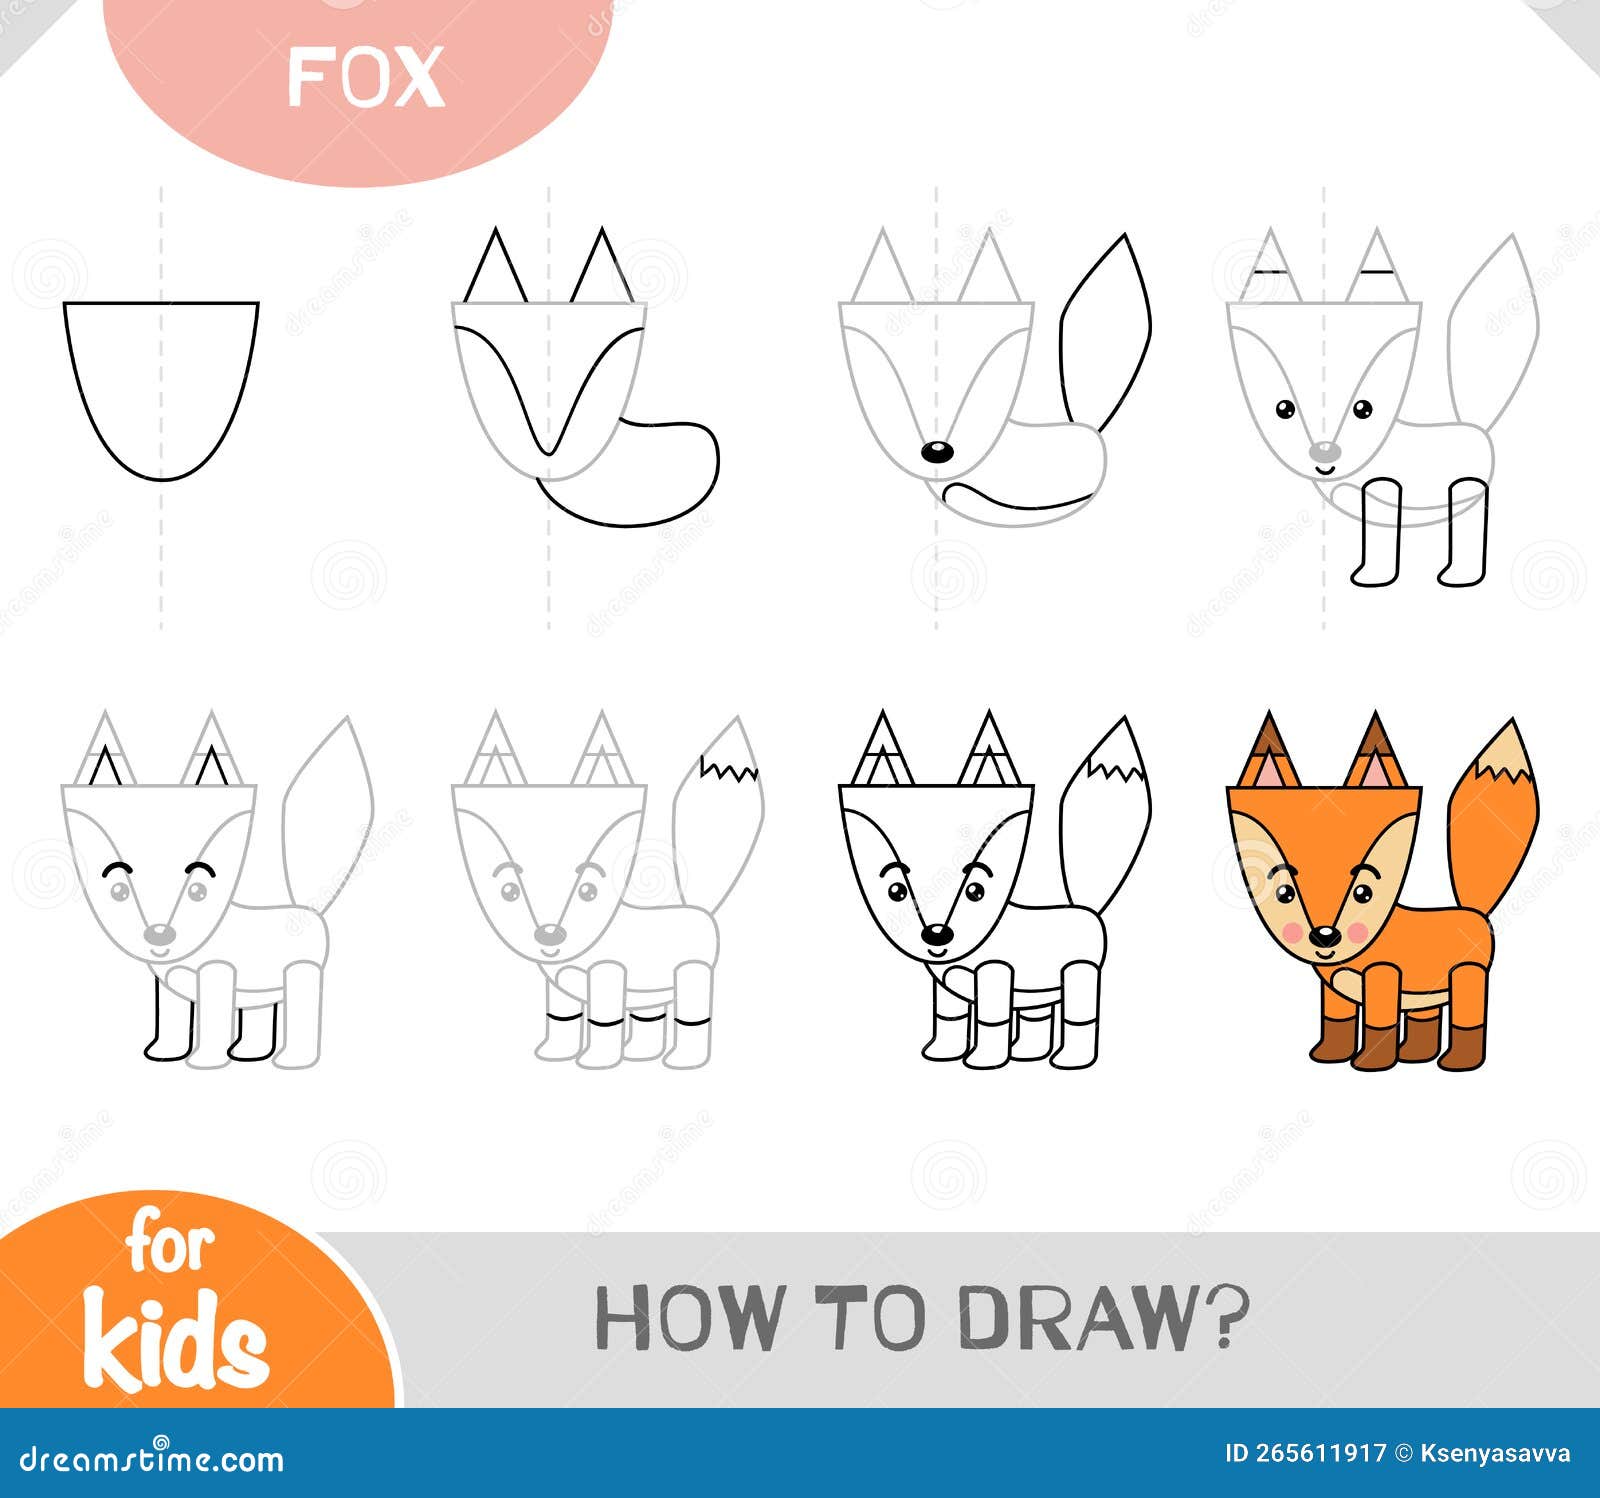 3 Formas de Desenhar uma Raposa - wikiHow